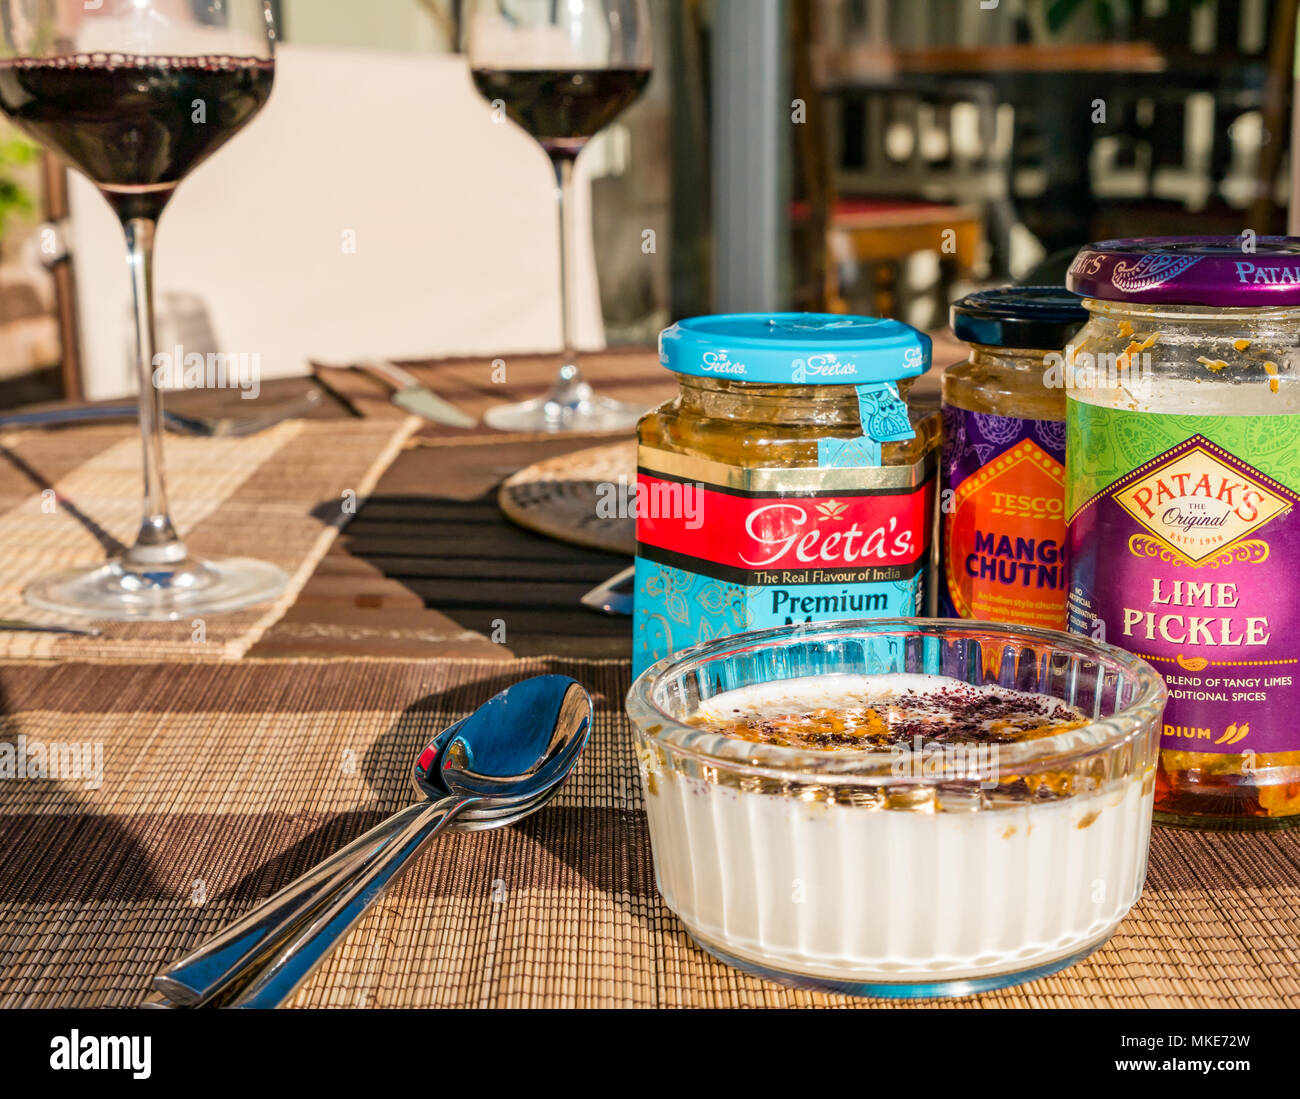 Tisch im Freien zum Servieren mit Begleitungen Joghurt, aromatisiert mit Gewürzen, Chutney und essiggurke Gläser Curry und roten Wein in Gläsern, Schottland, Großbritannien Stockfoto